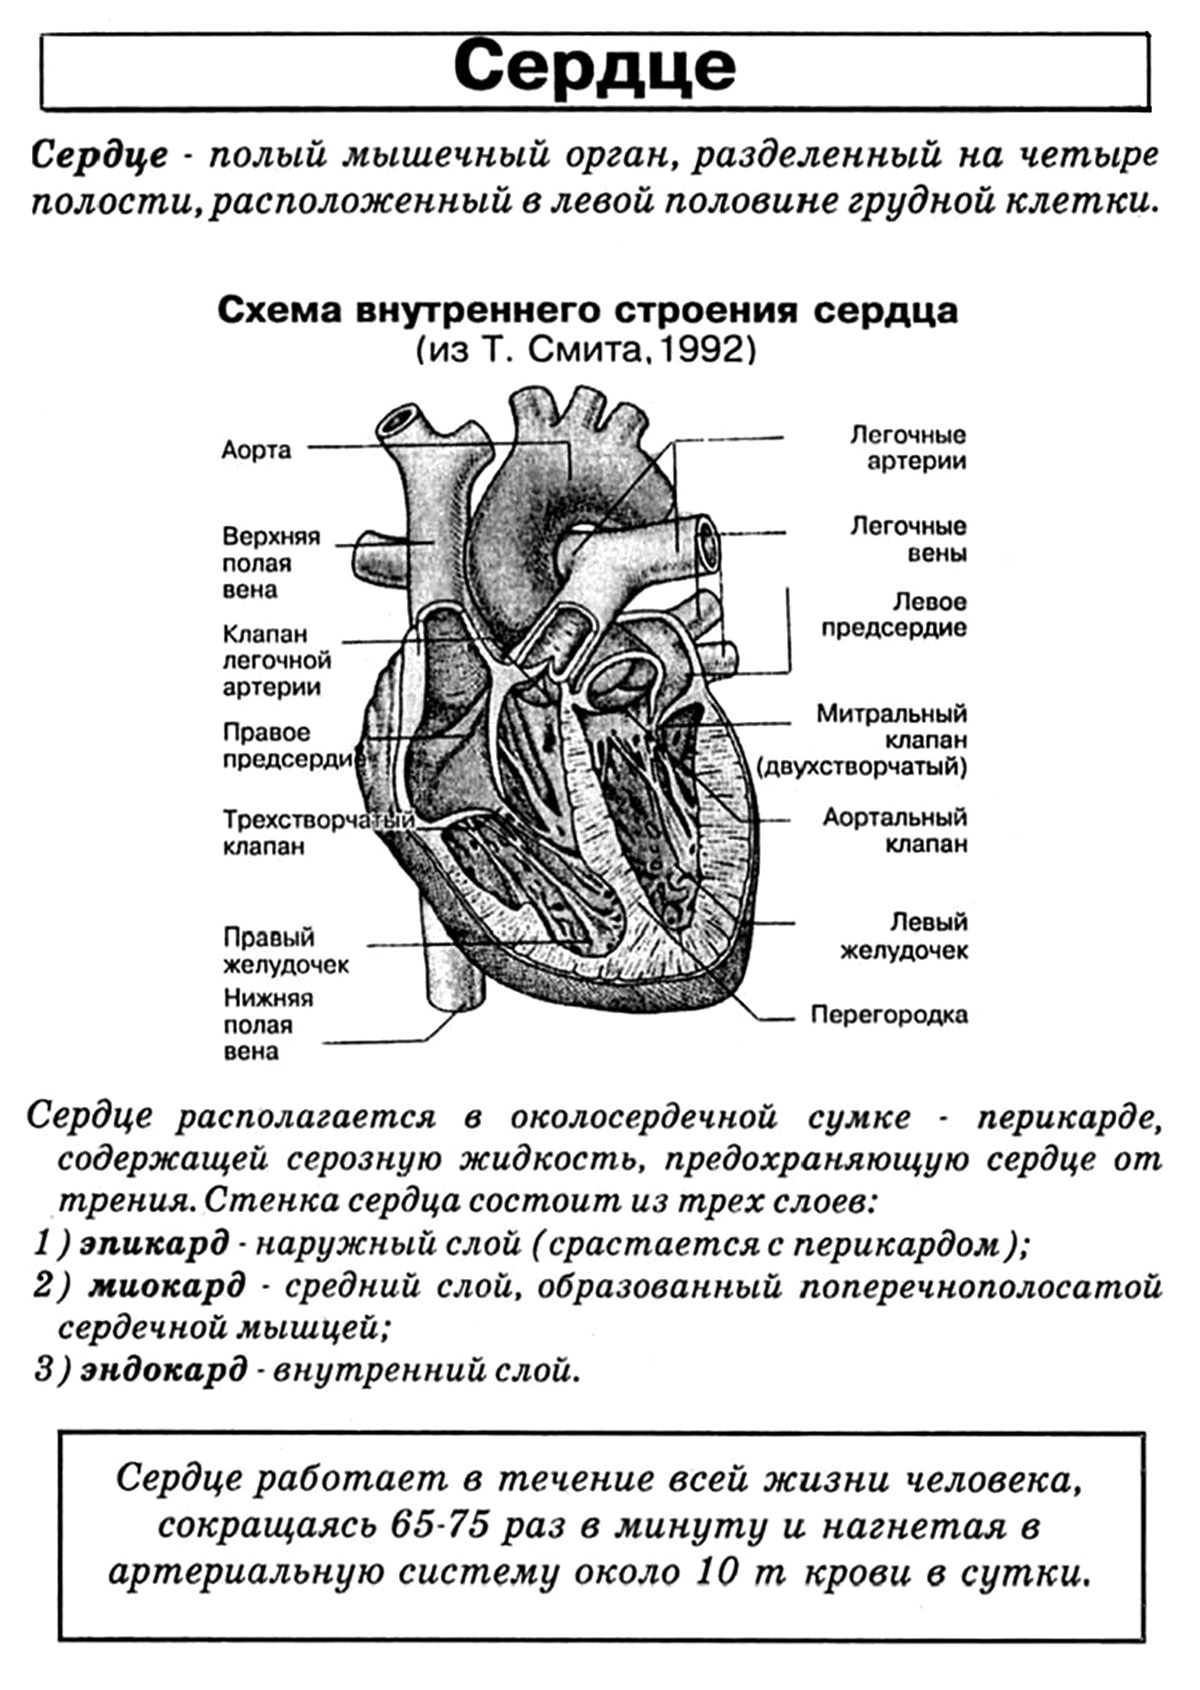 Биология огэ схемы. ЕГЭ биология анатомия строение сердца. Сердце схема строения анатомия. Строение сердца человека ЕГЭ биология. Строение сердца таблица биология.